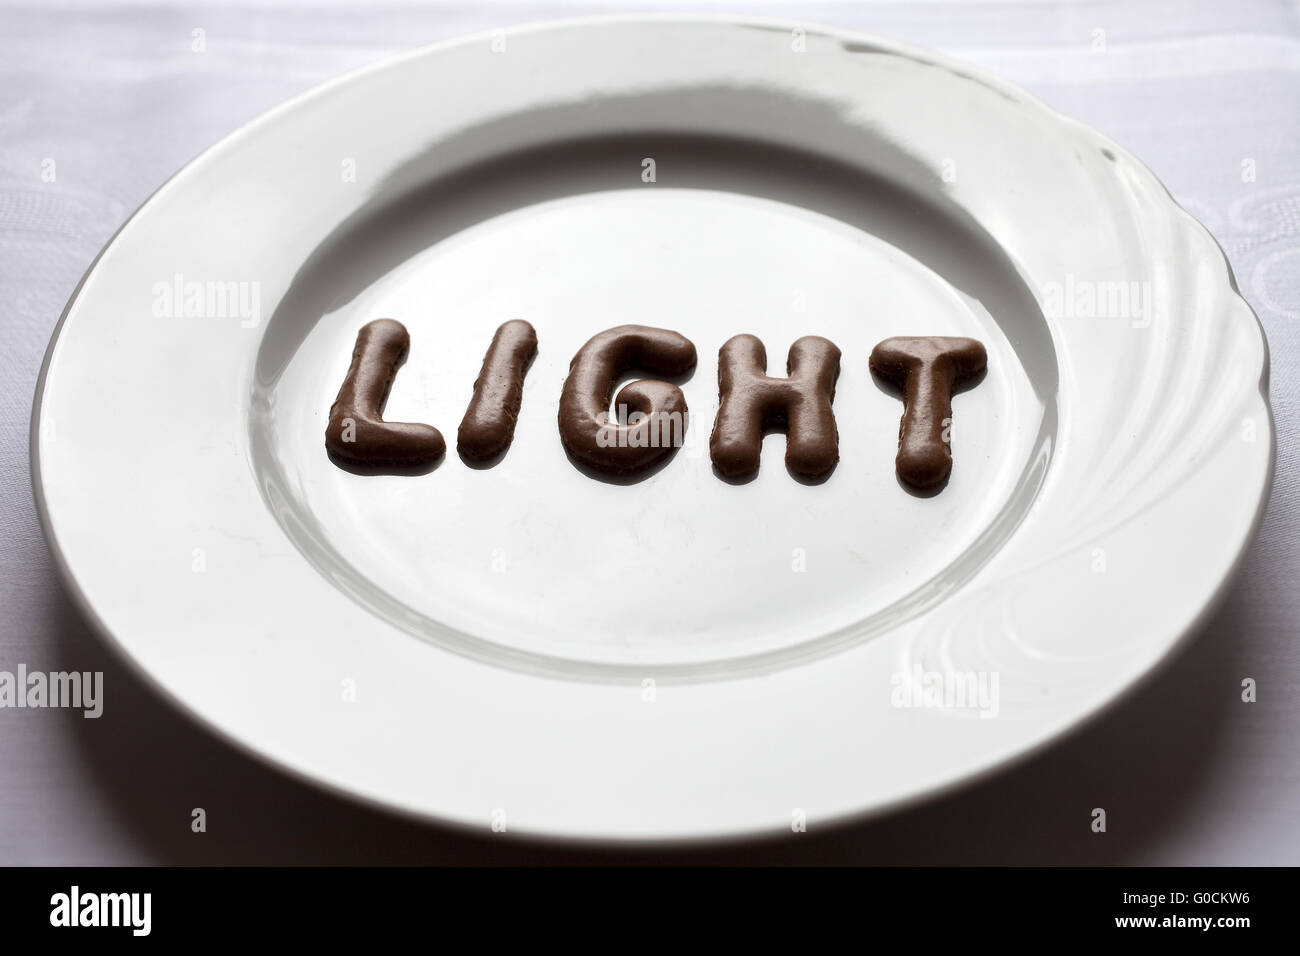 Buchstaben, das Wort Licht auf einem Teller Stockfoto